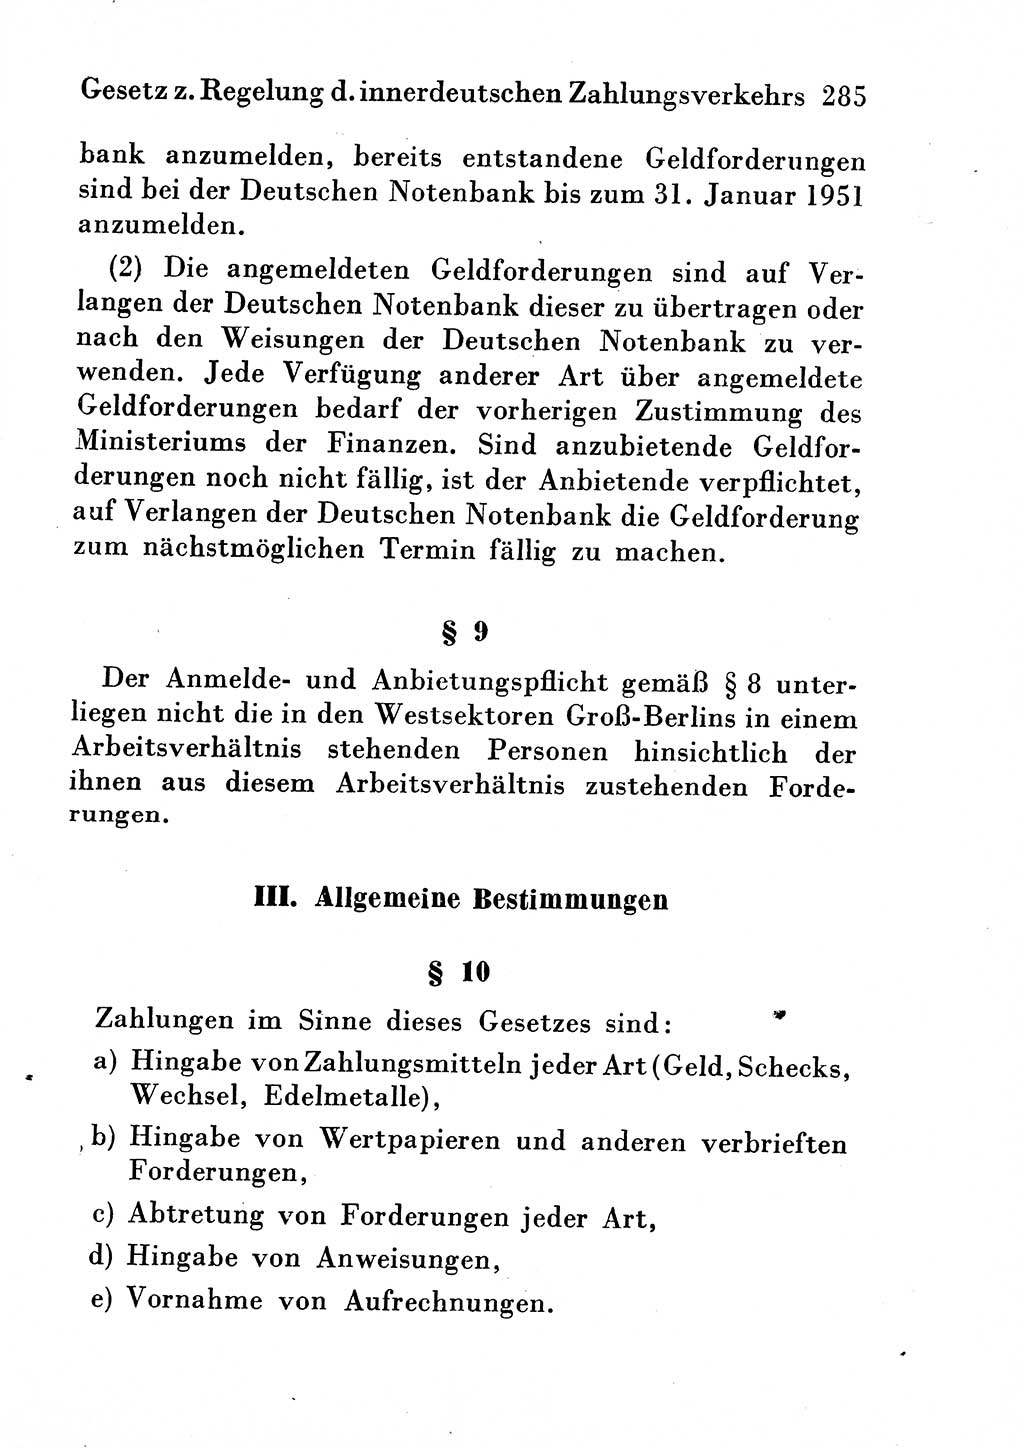 Strafgesetzbuch (StGB) und andere Strafgesetze [Deutsche Demokratische Republik (DDR)] 1954, Seite 285 (StGB Strafges. DDR 1954, S. 285)